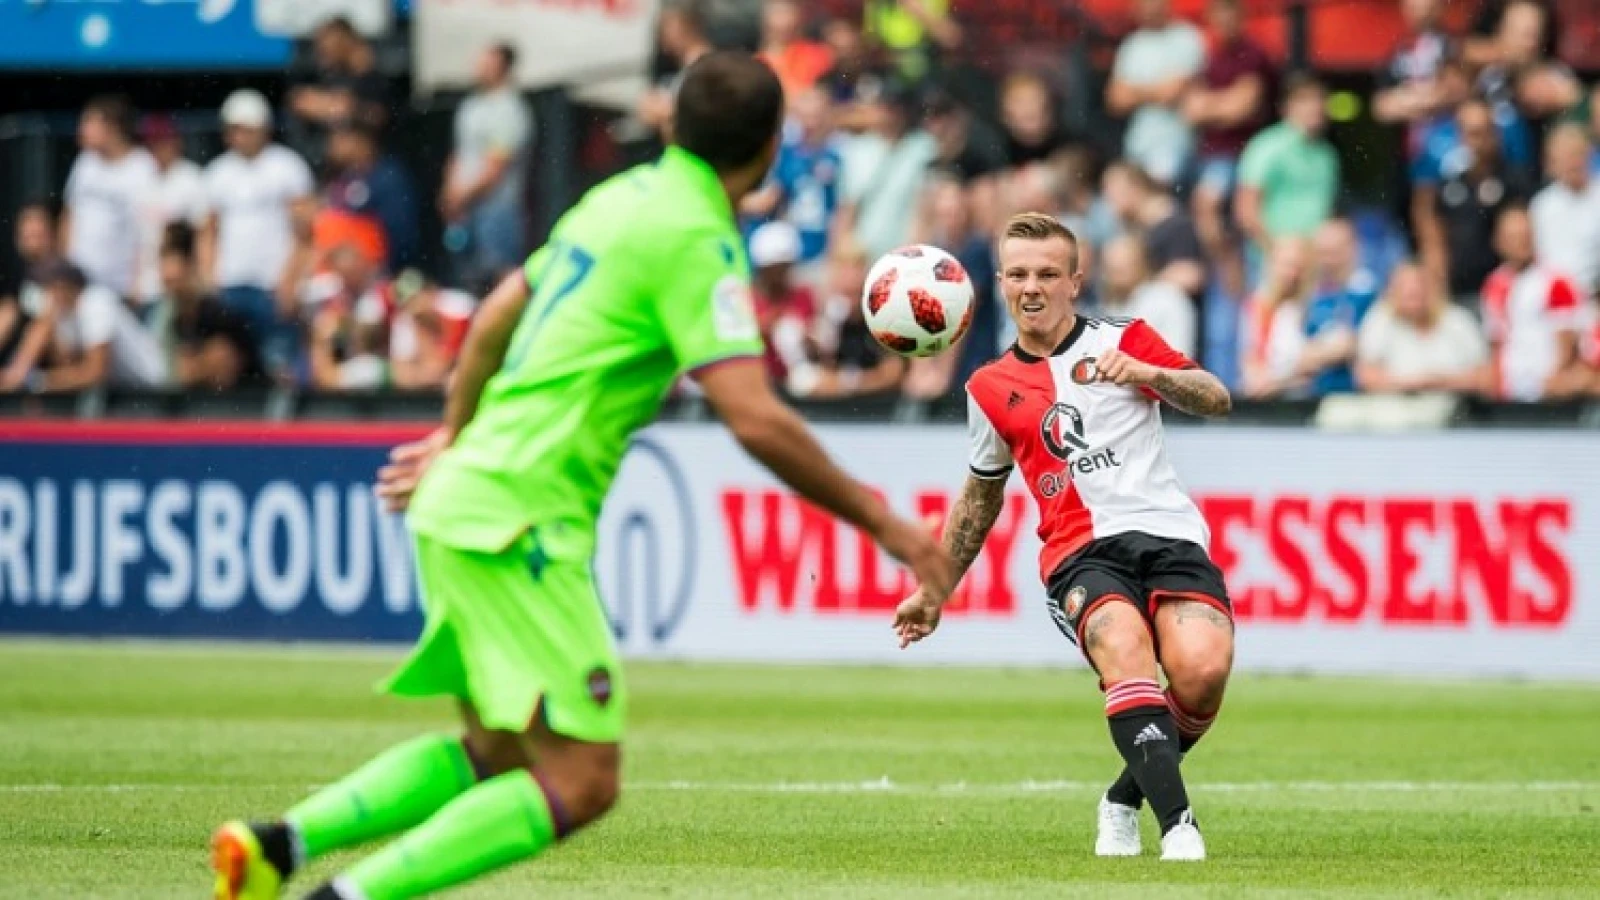 OPSTELLING | Feyenoord begint met Clasie in de basis